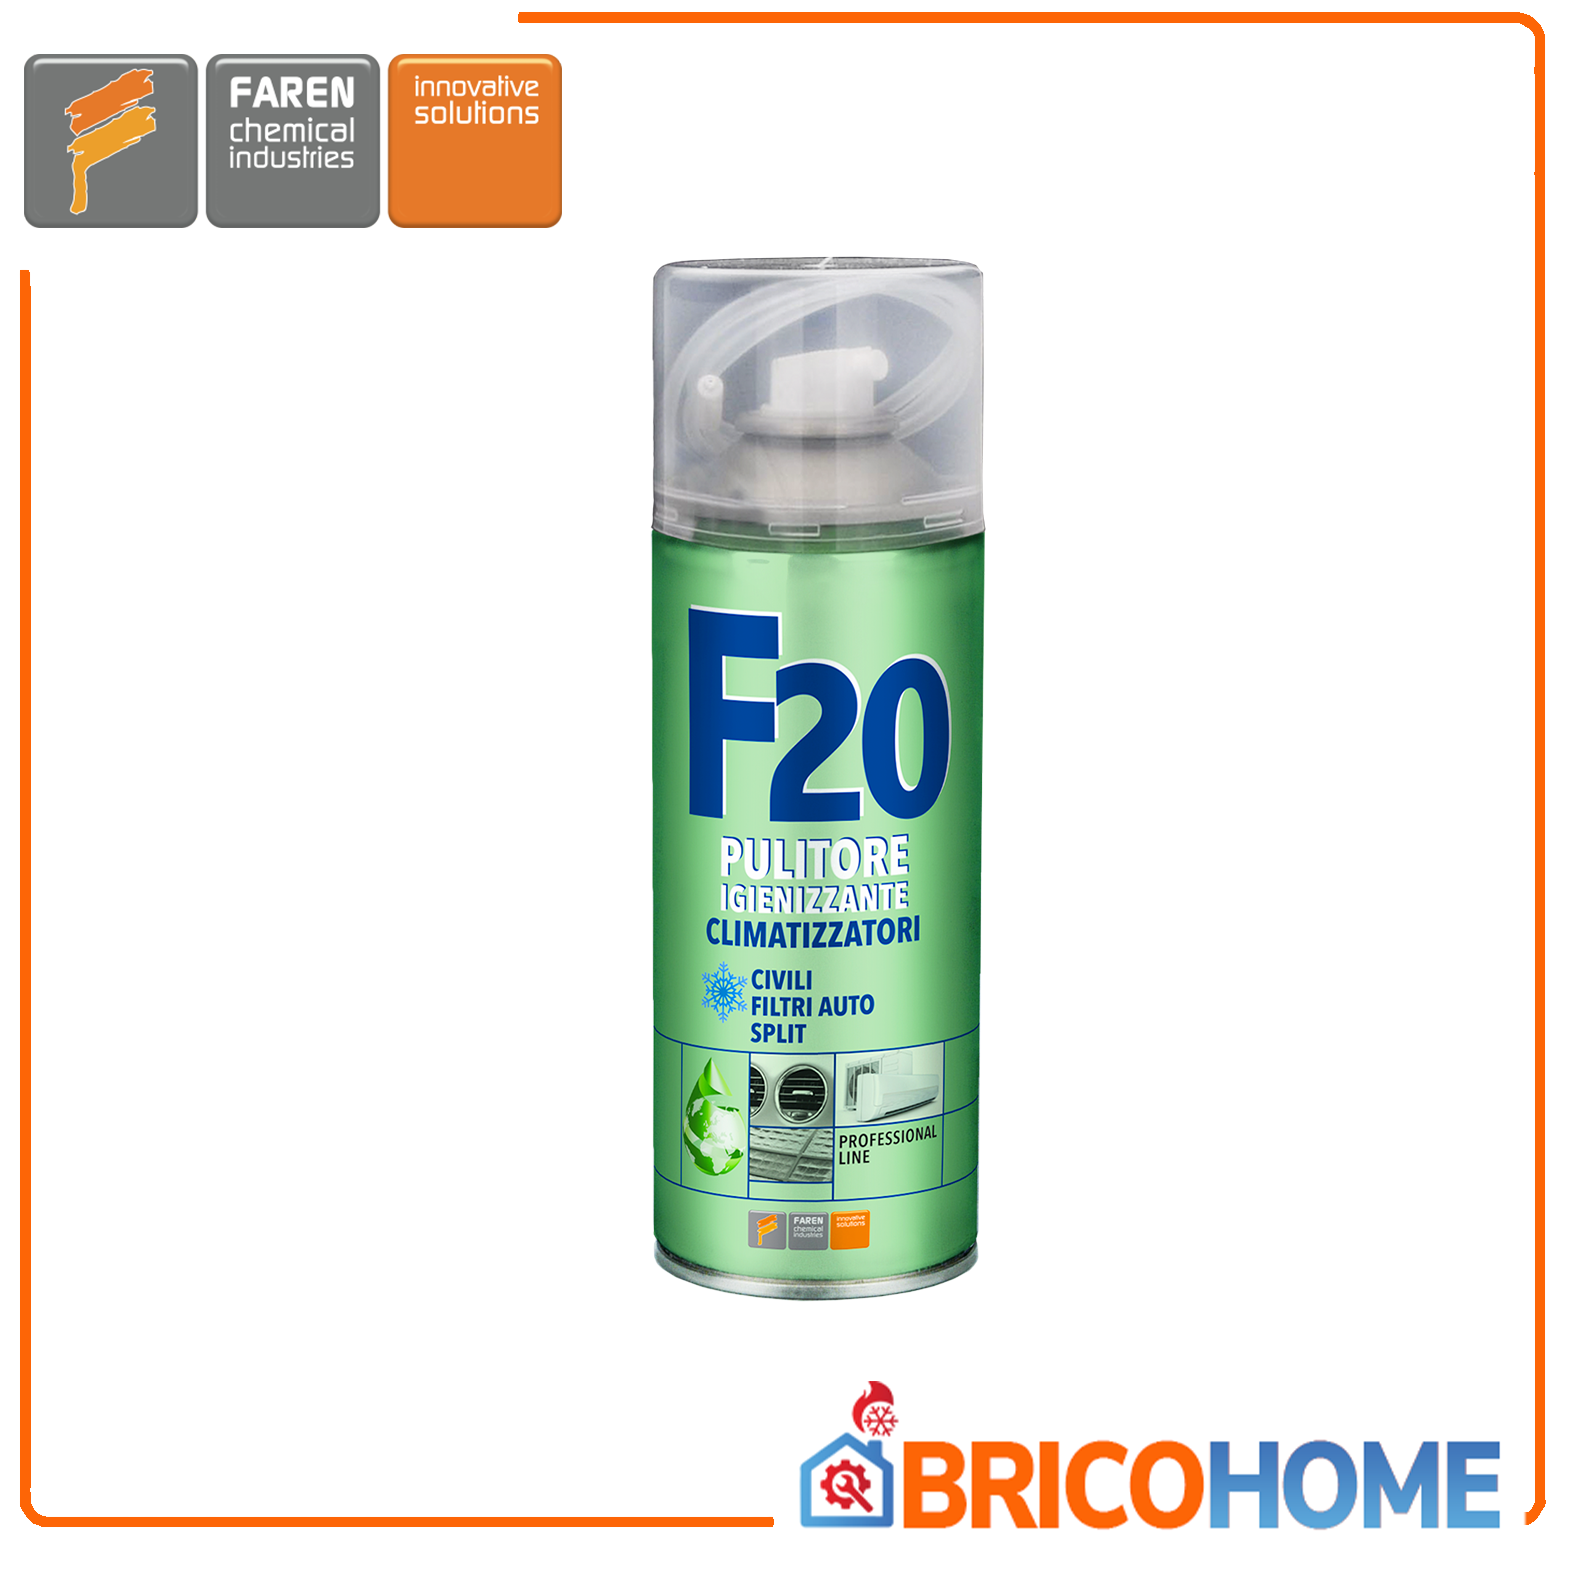 Spray igienizzante disinfettante per condizionatori e climatizzatori F20 FAREN